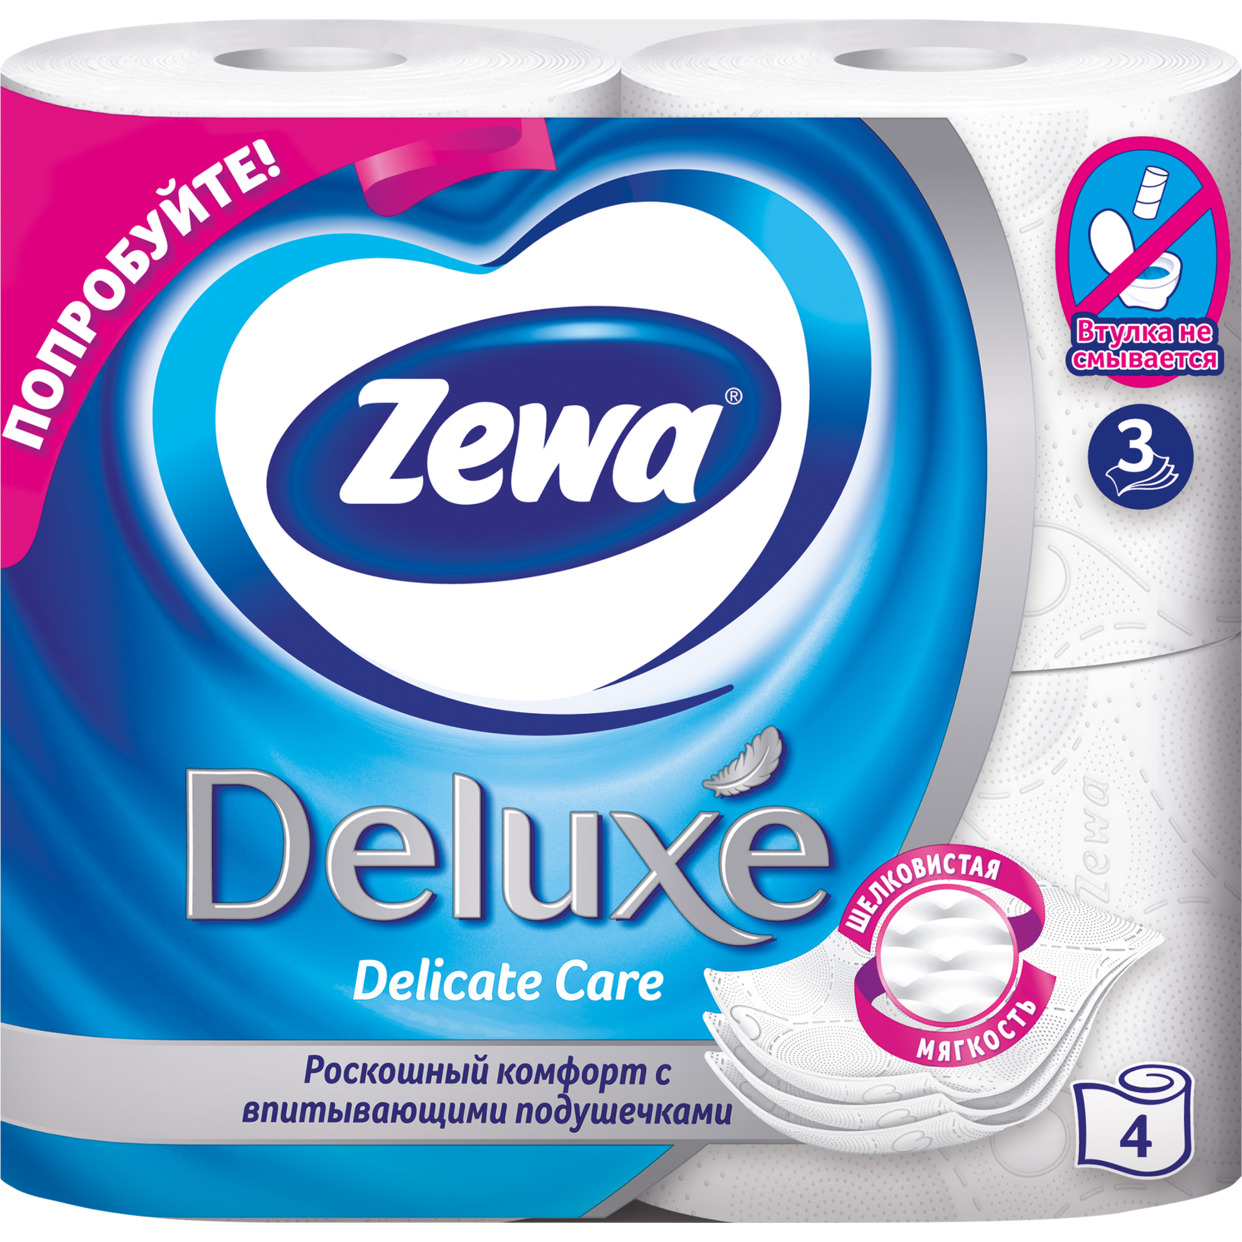 Бумага туалетная Zewa Deluxe Delicate Care 3 слоя 4 рулона по акции в Пятерочке